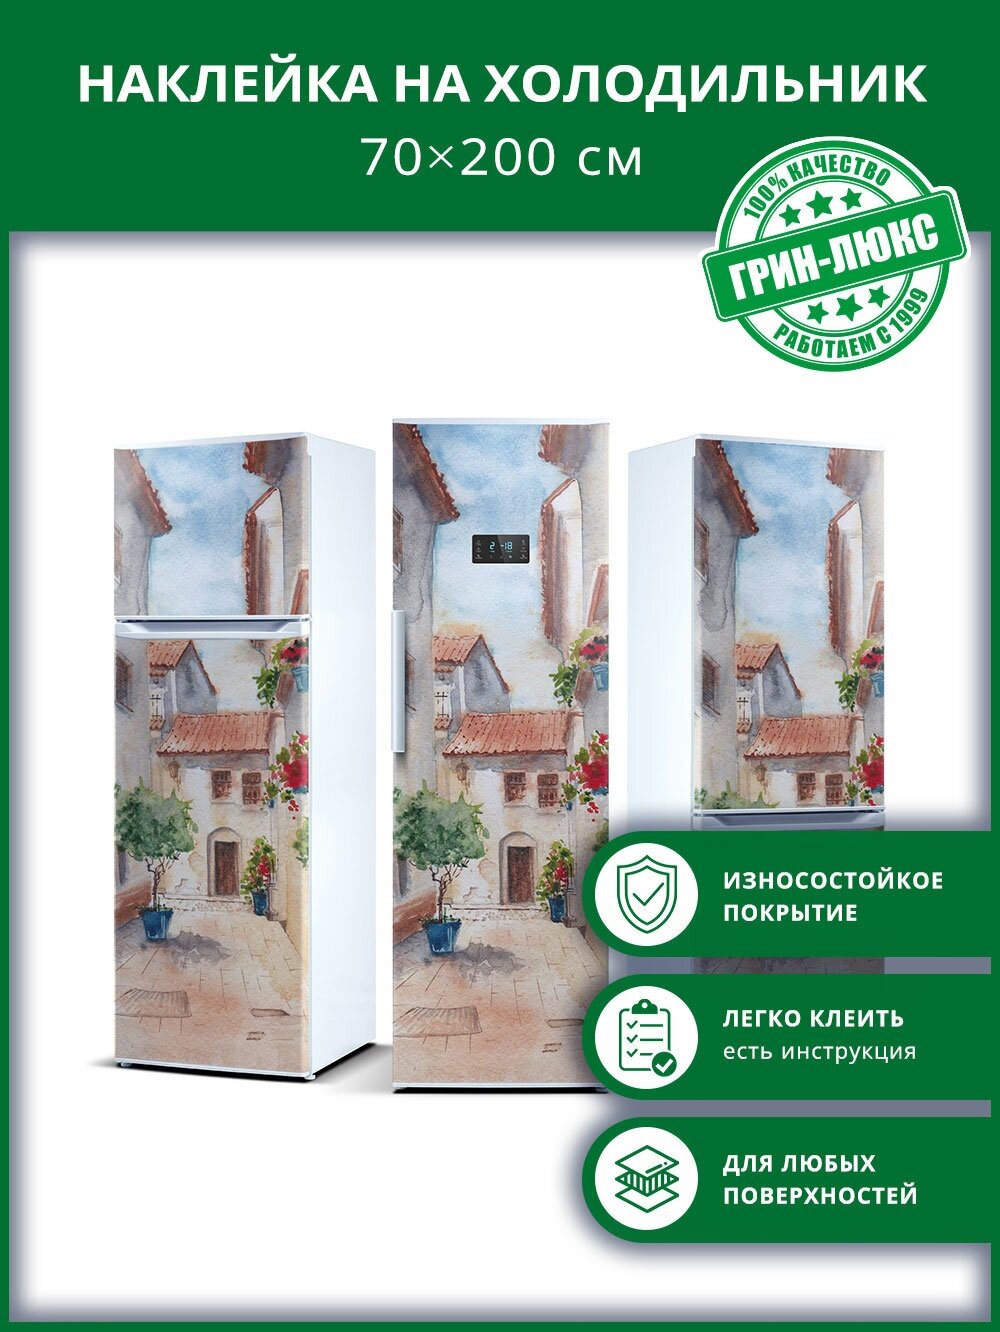 Наклейка с защитным покрытием на холодильник "Солнечная Испания 70х200"